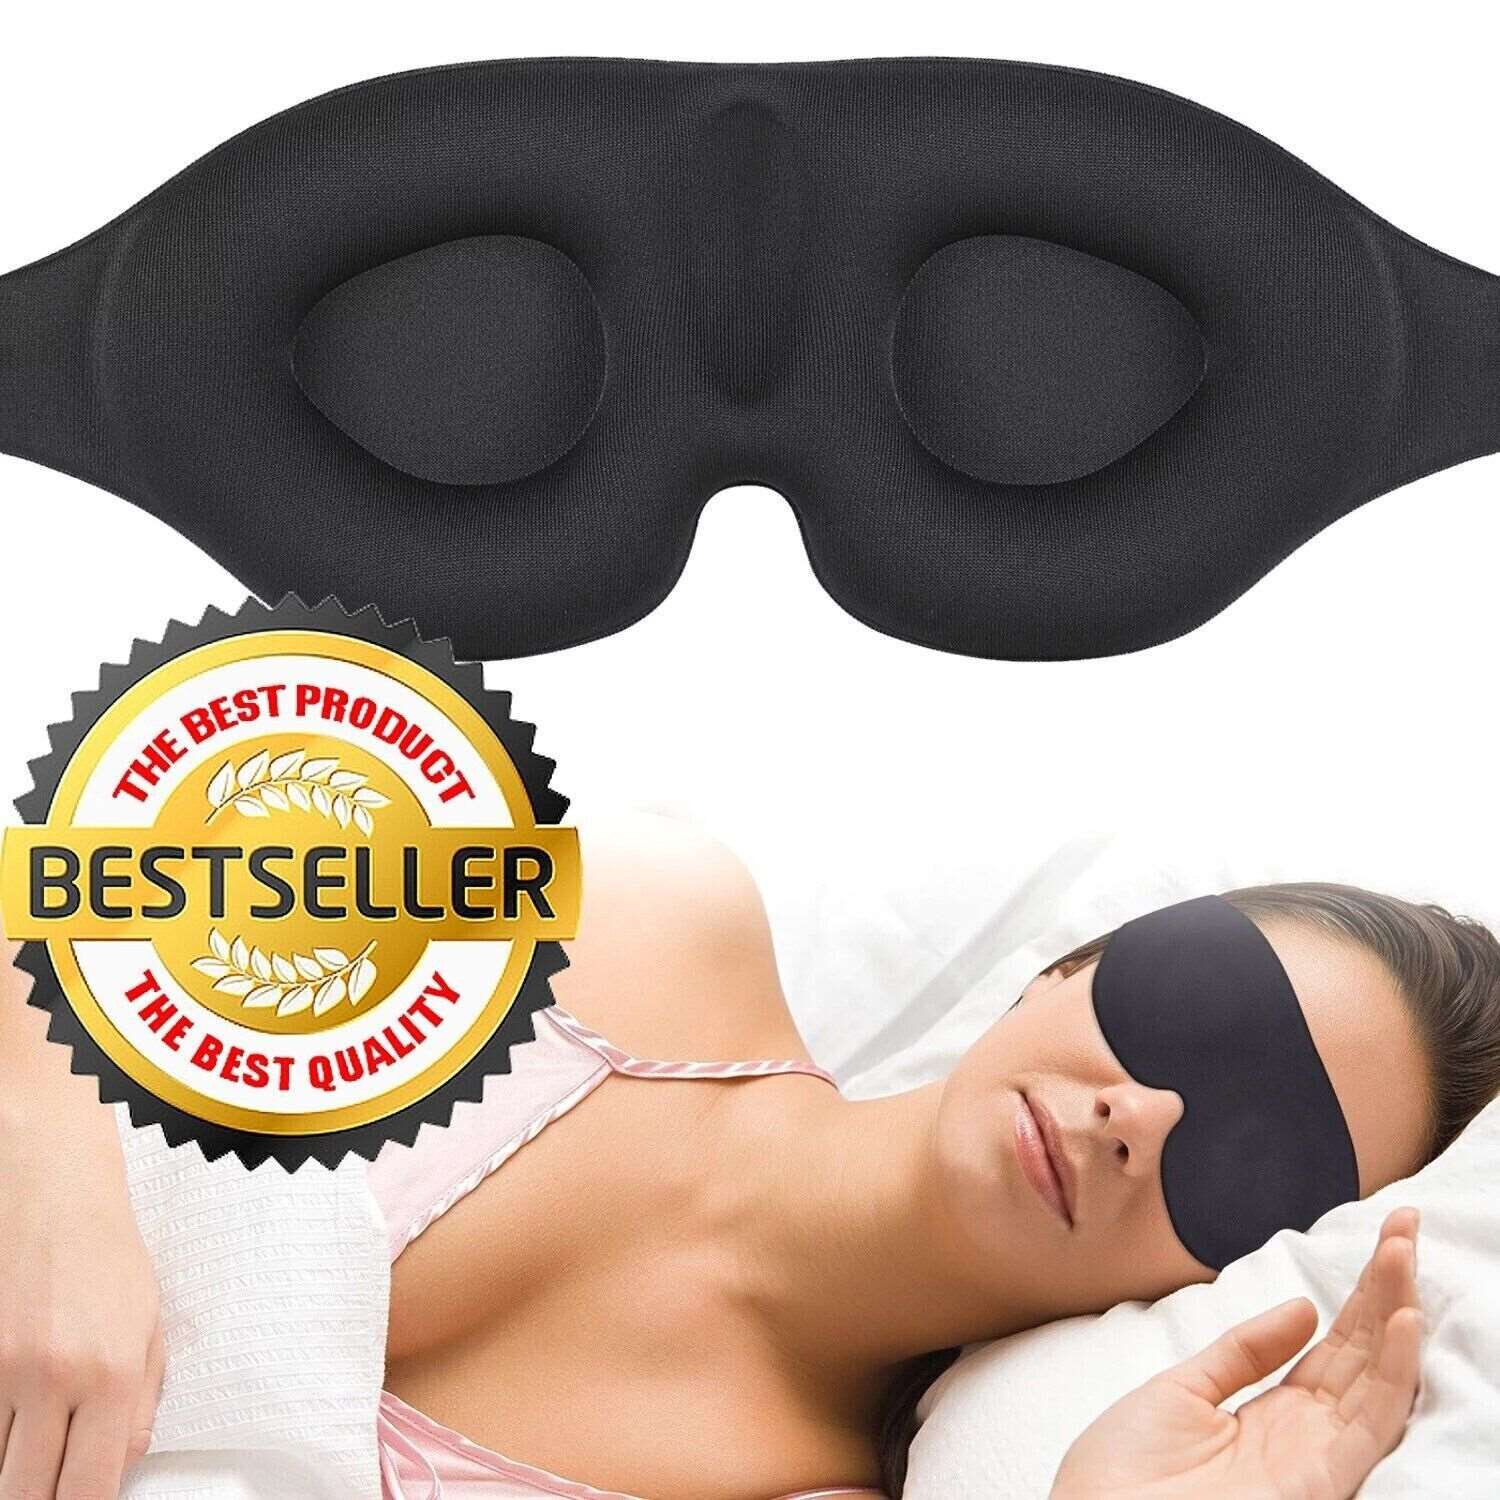 3D Sleep Mask for Men & Women